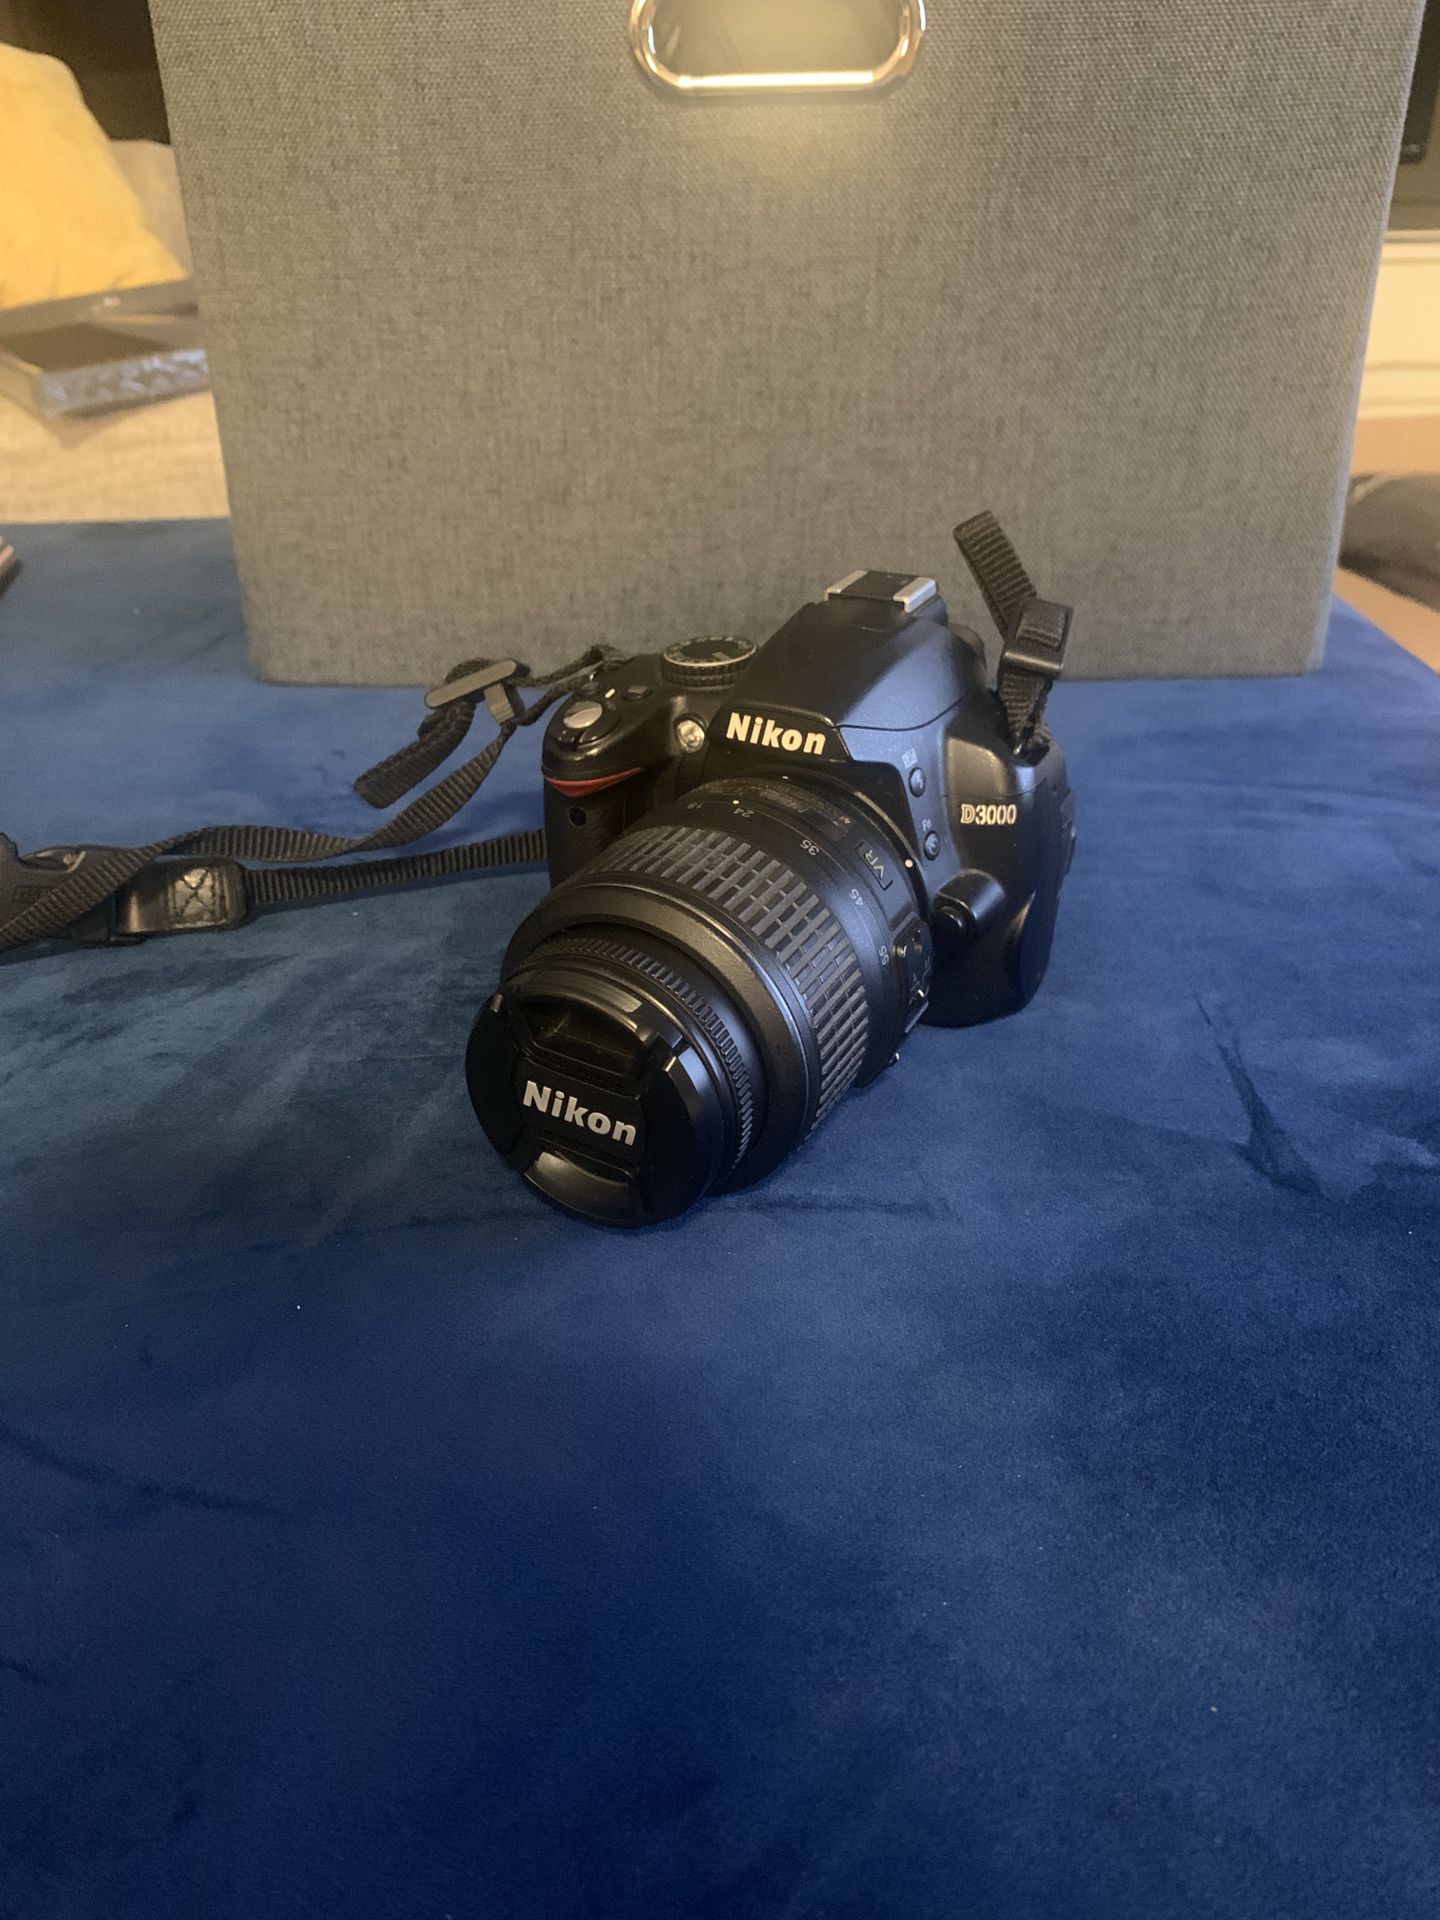 DSLR Camera - Nikon D3000